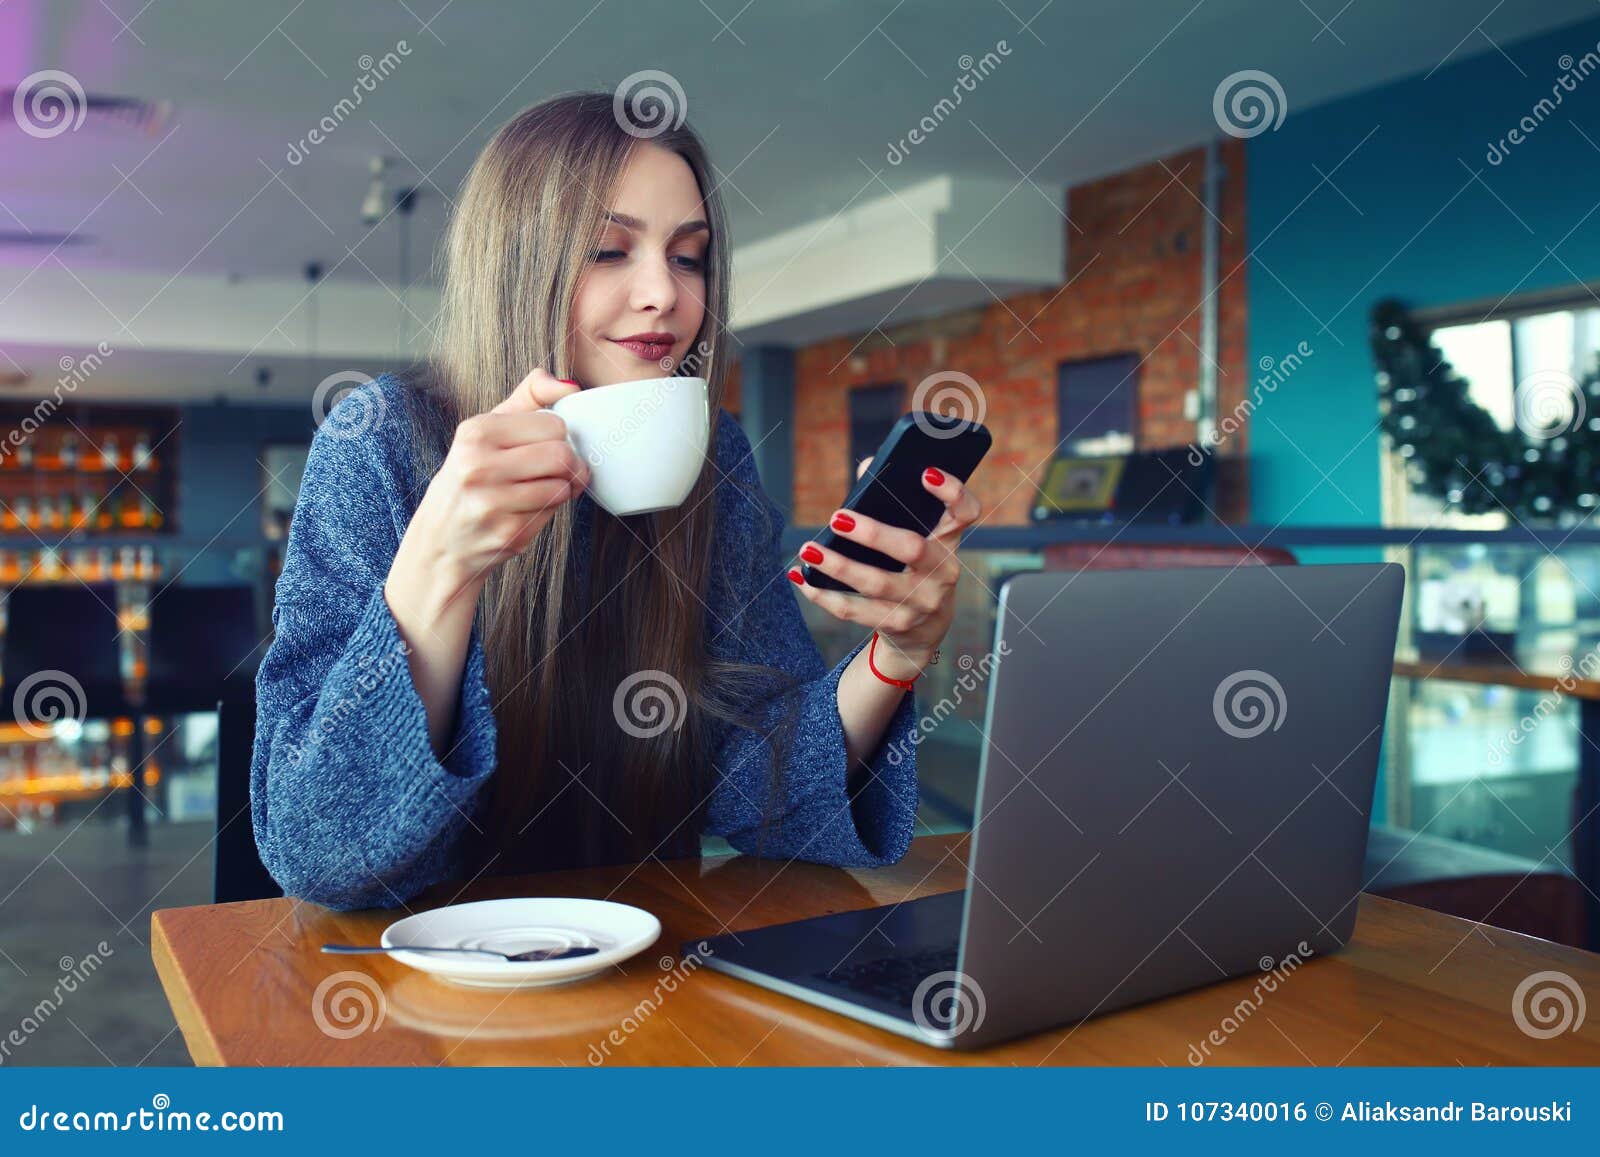 Ничем в телефоне сижу. Девушка в кафе с телефоном. Девушка со смартфоном в офисе. Девушка с телефоном в руках в кафе. Сидит за столом с телефоном.